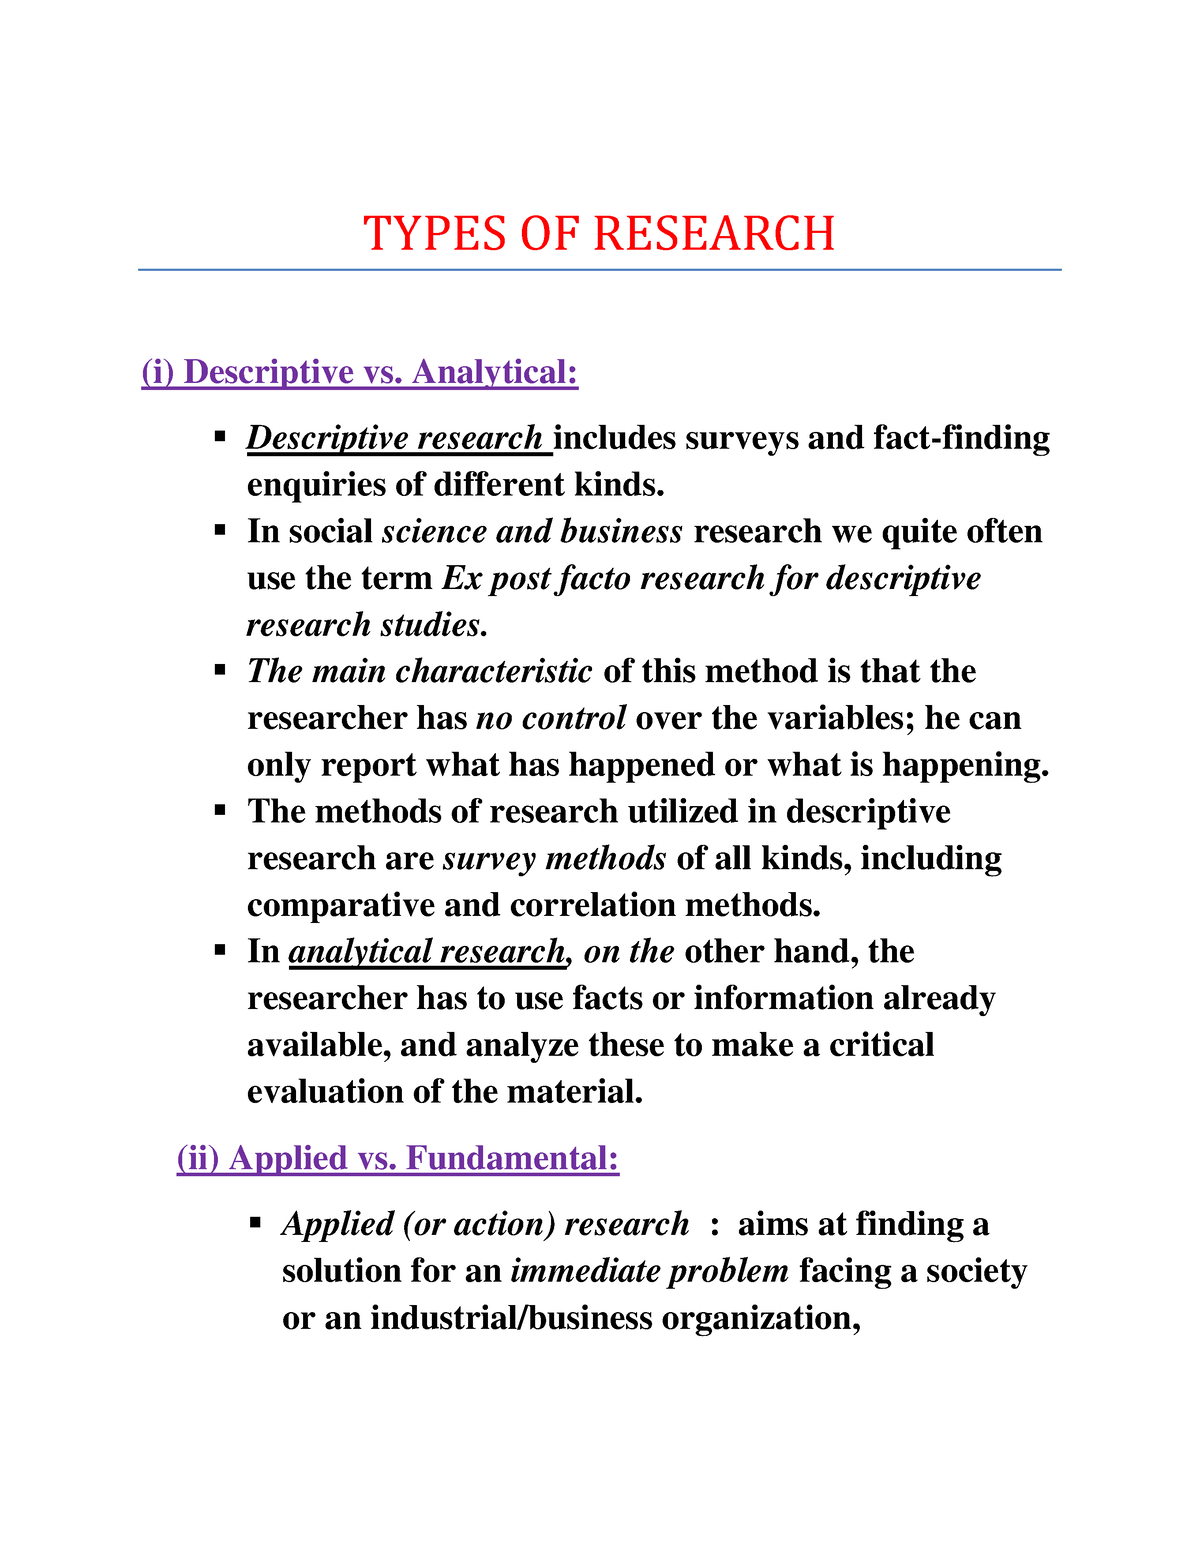 descriptive research vs action research